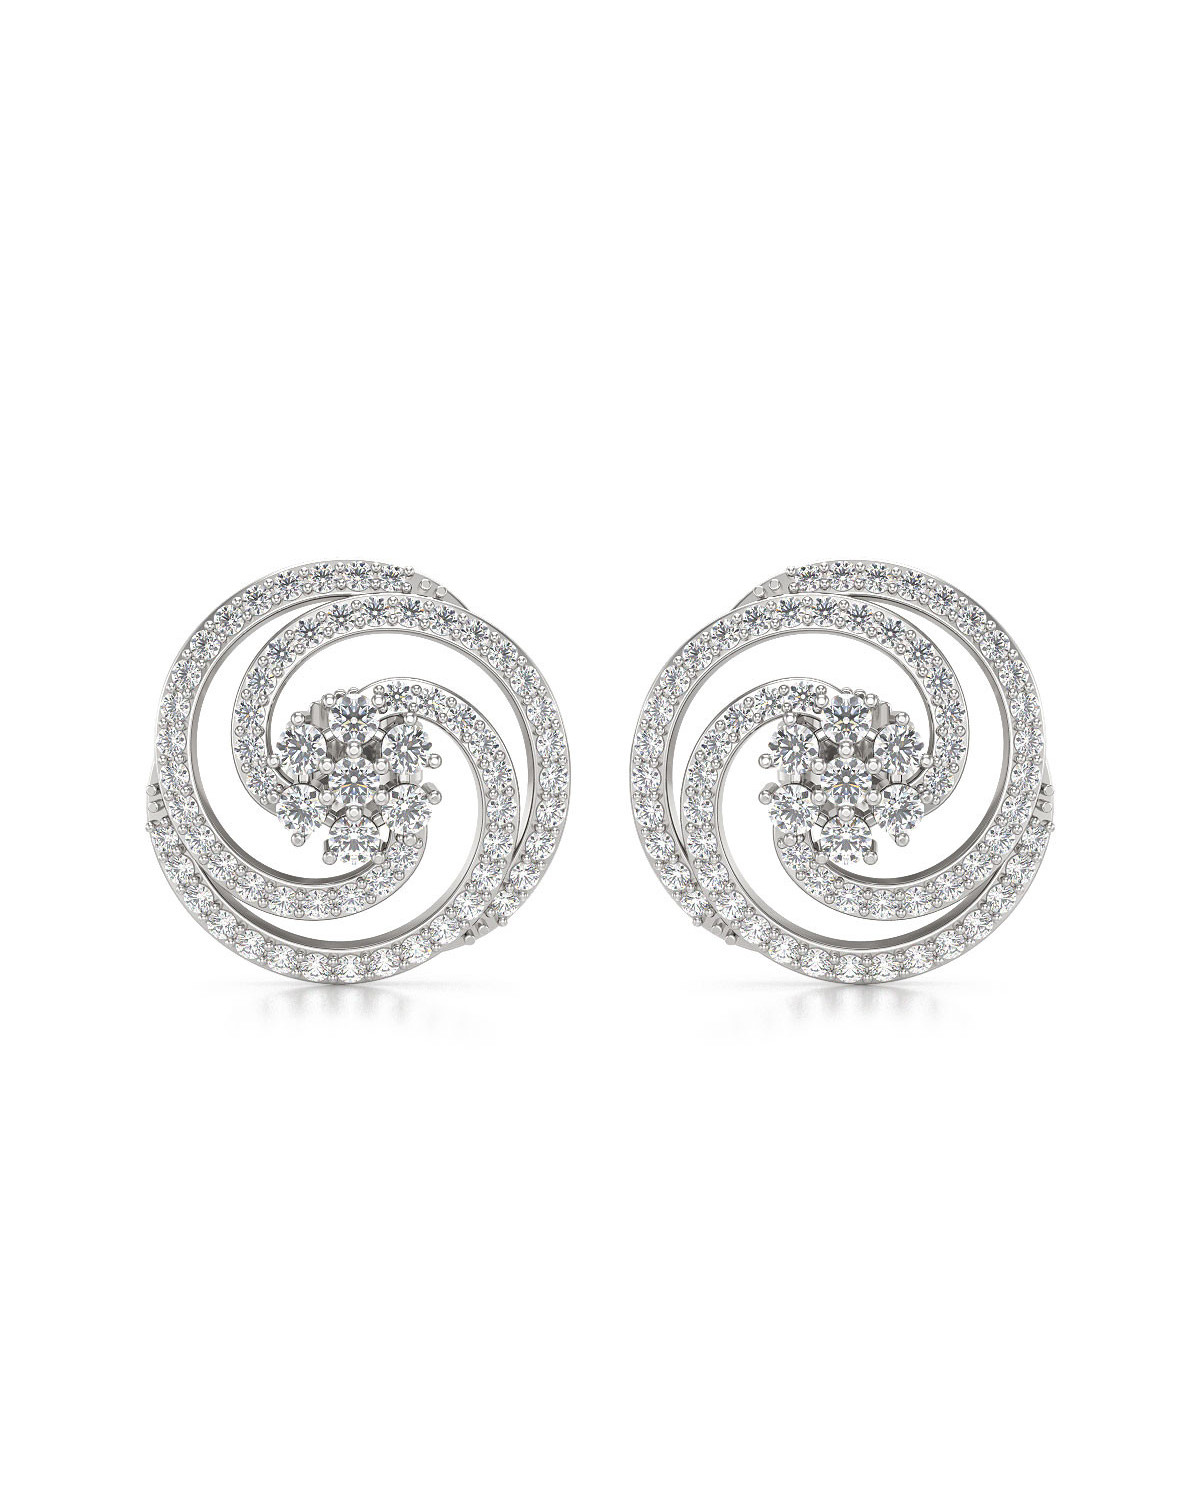 Boucles d'oreille Diamants sur Argent 925 4.01grs